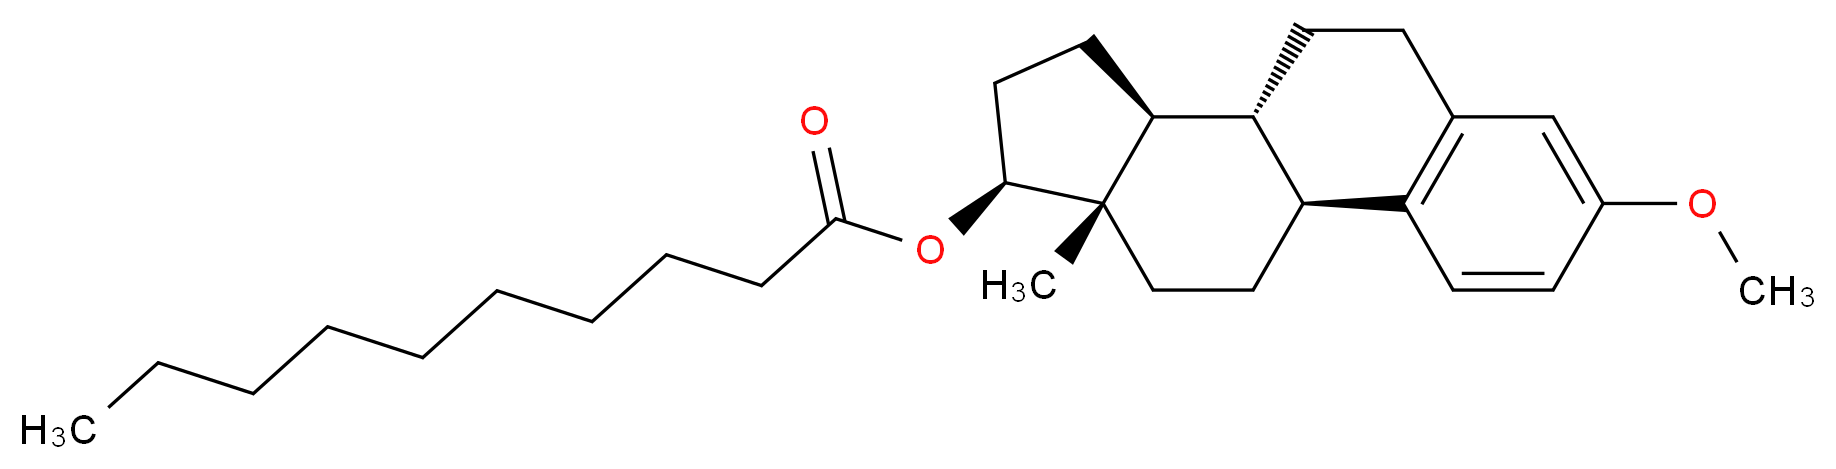 3,17β-Estradiol-3-methylether-17-decanoate_Molecular_structure_CAS_1042947-85-2)